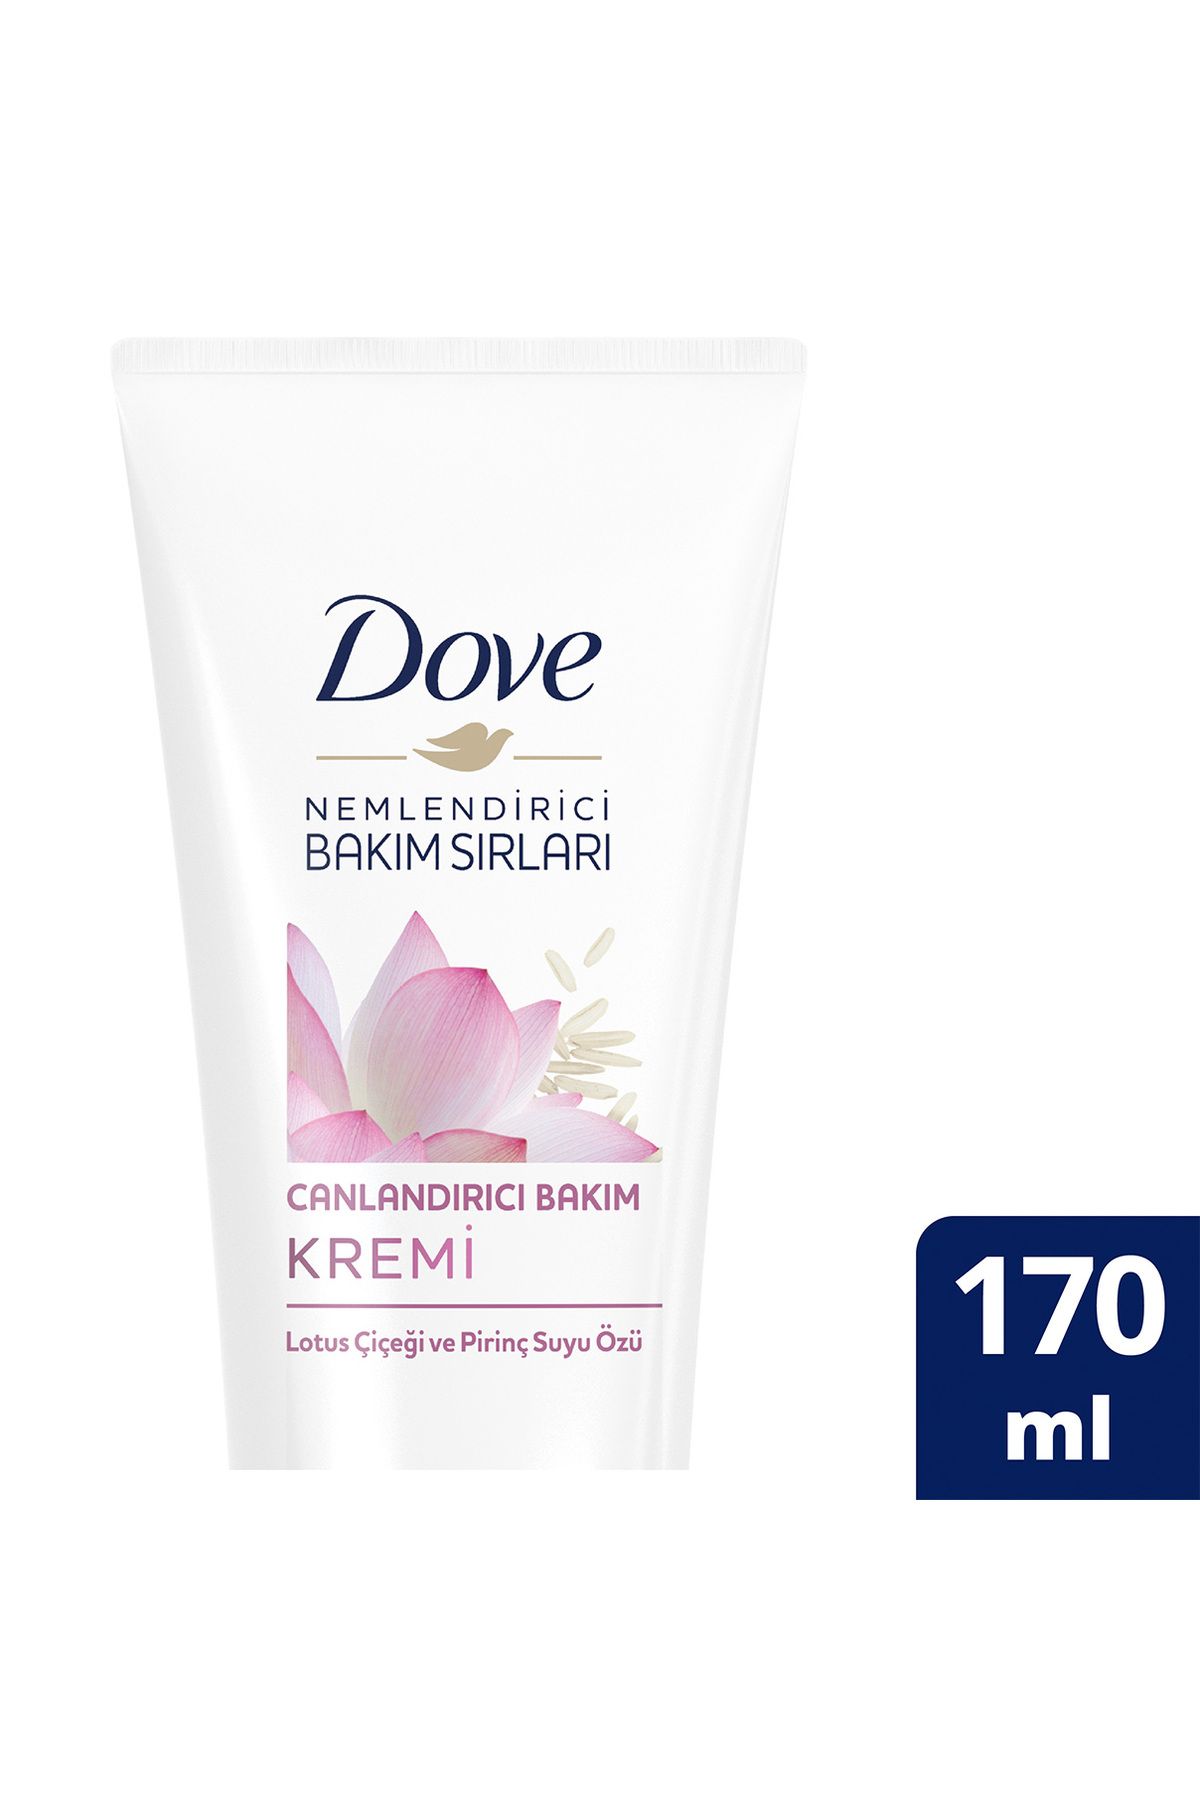 Dove Nemlendirici Bakım Sırları Canlandırıcı Saç Bakım Kremi Lotus Çiçeği Ve Pirinç Suyu Özü 170 ml